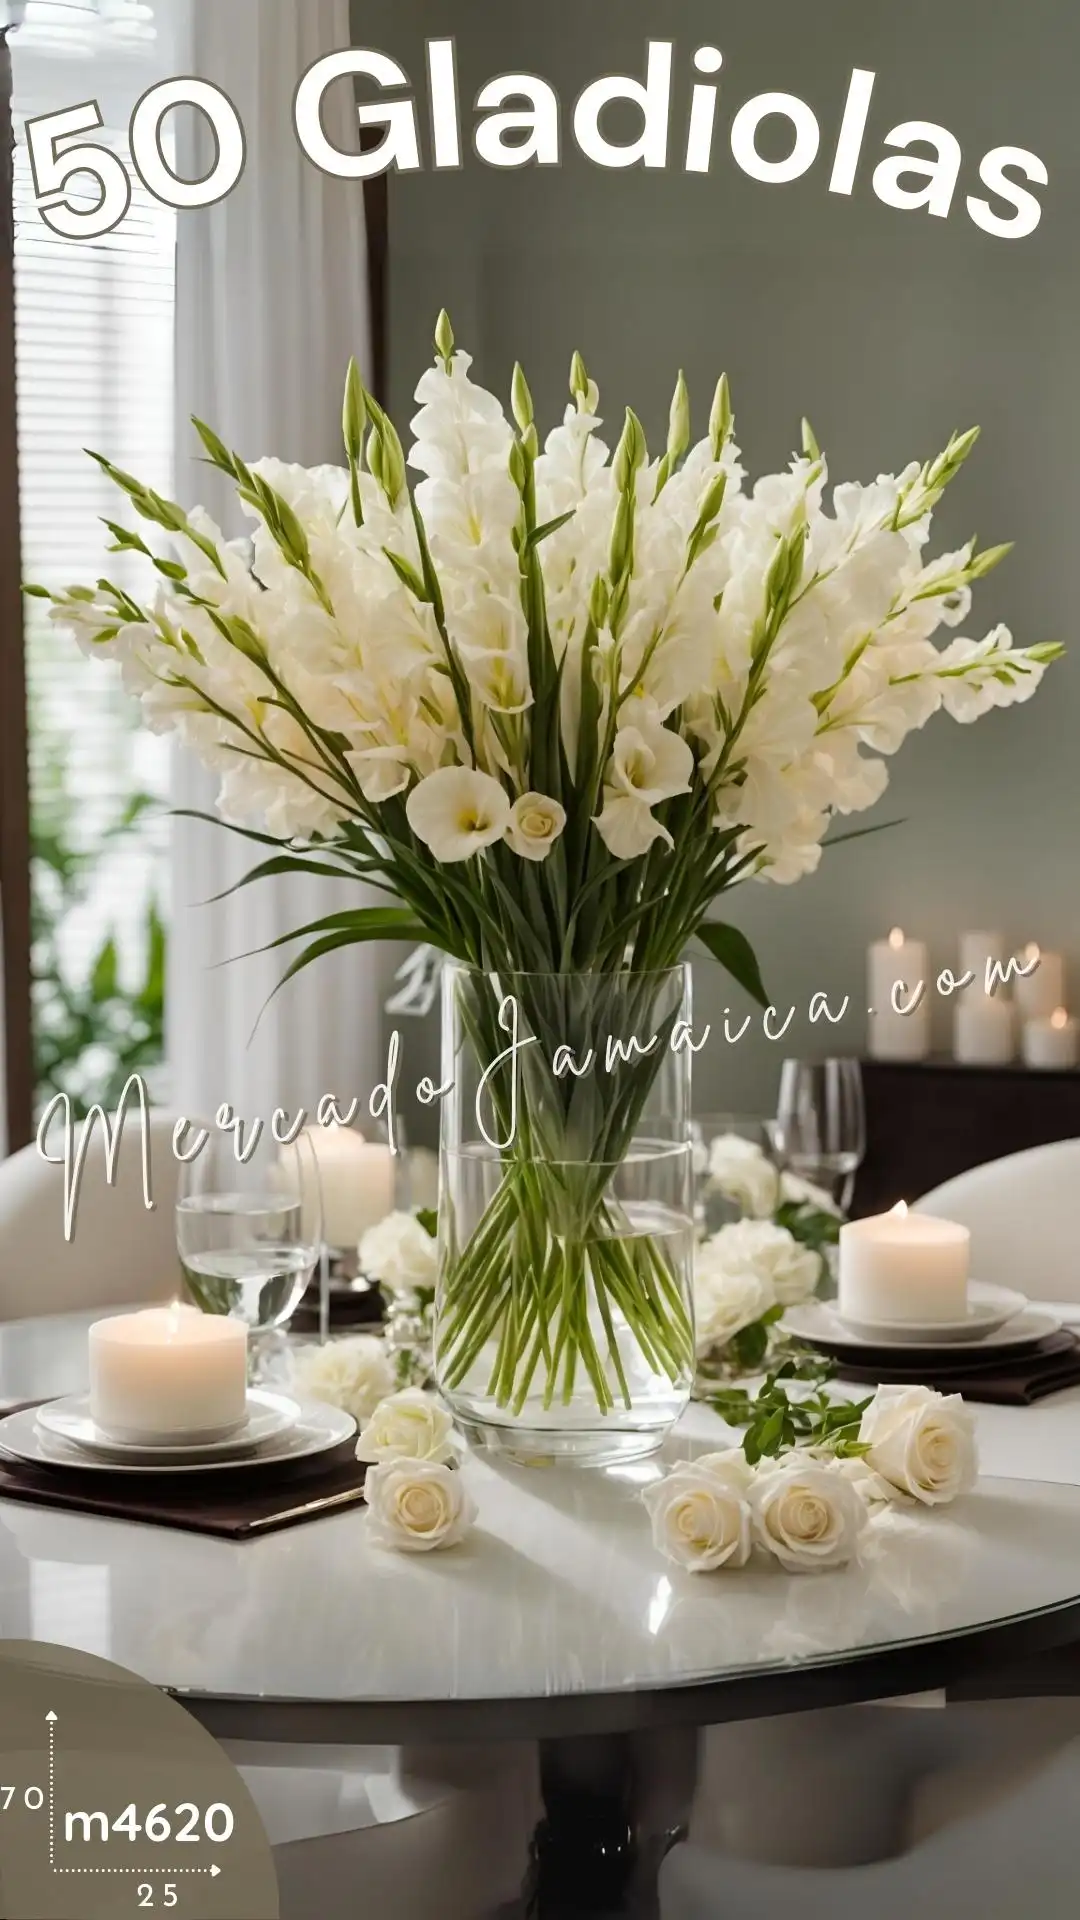 Flores clásicas 50 gladiolas blanco